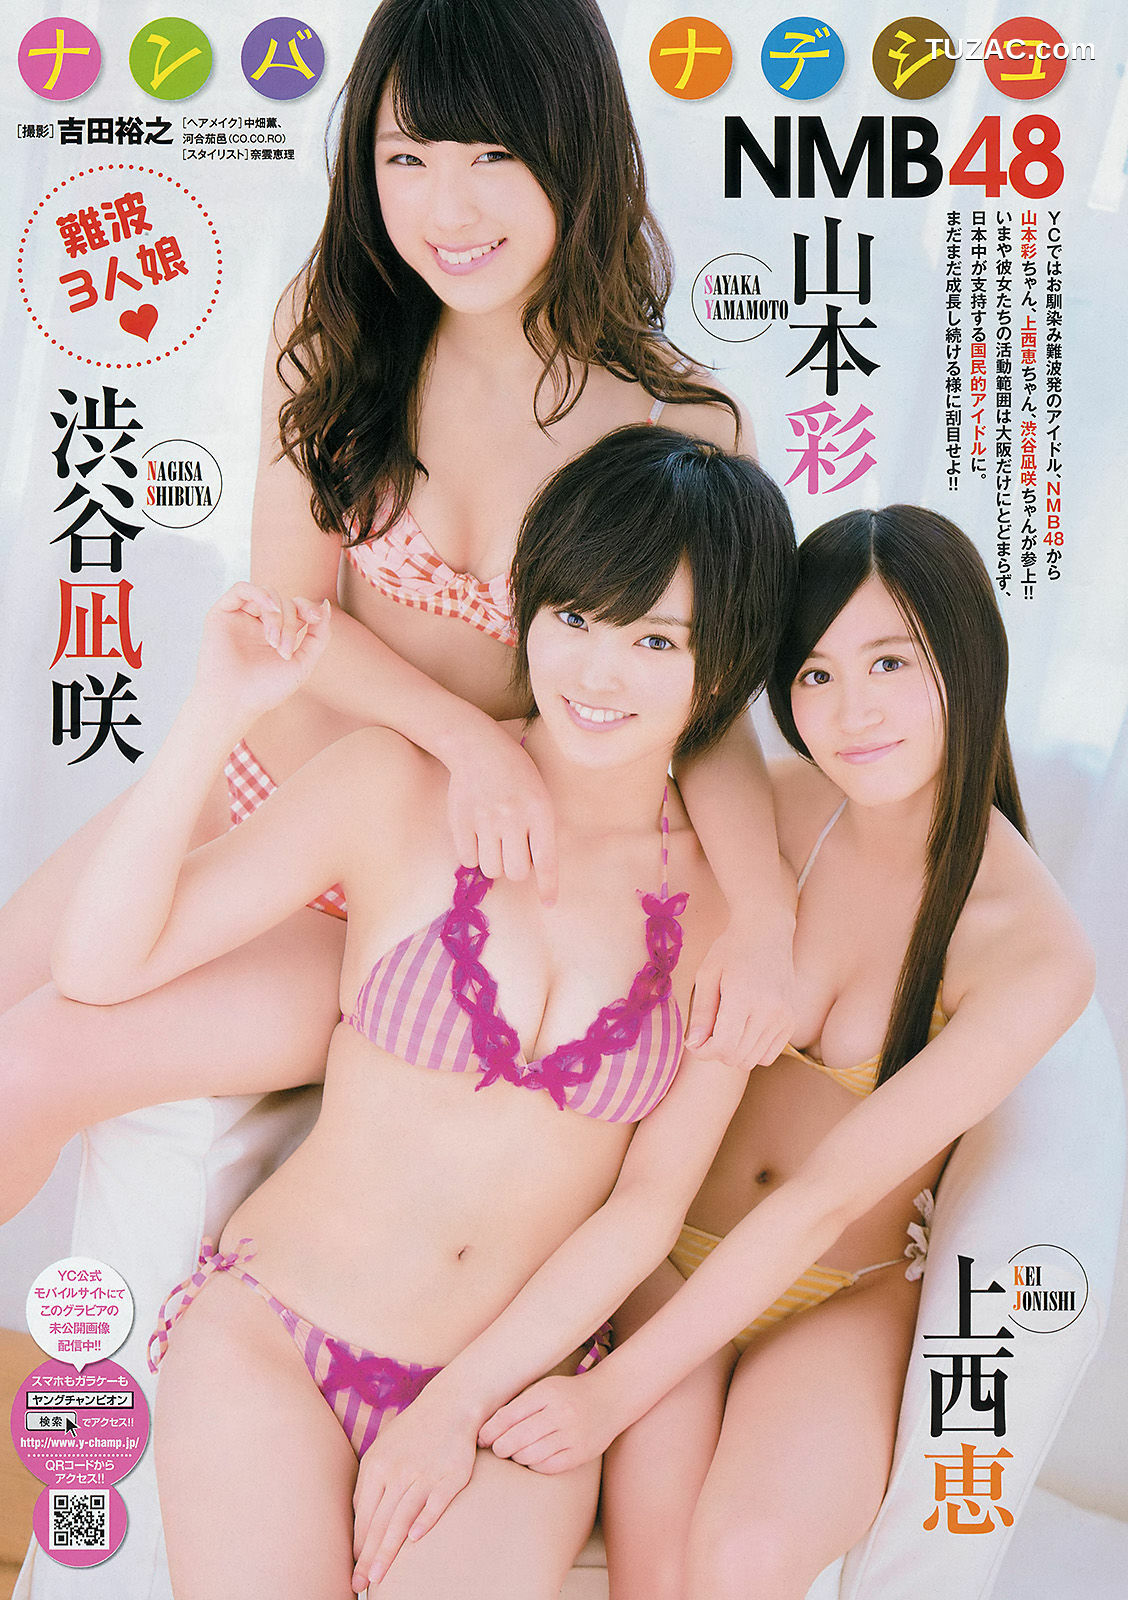 Young Champion杂志写真_ NMB48 小田島渚 2013年No.23 写真杂志[14P]